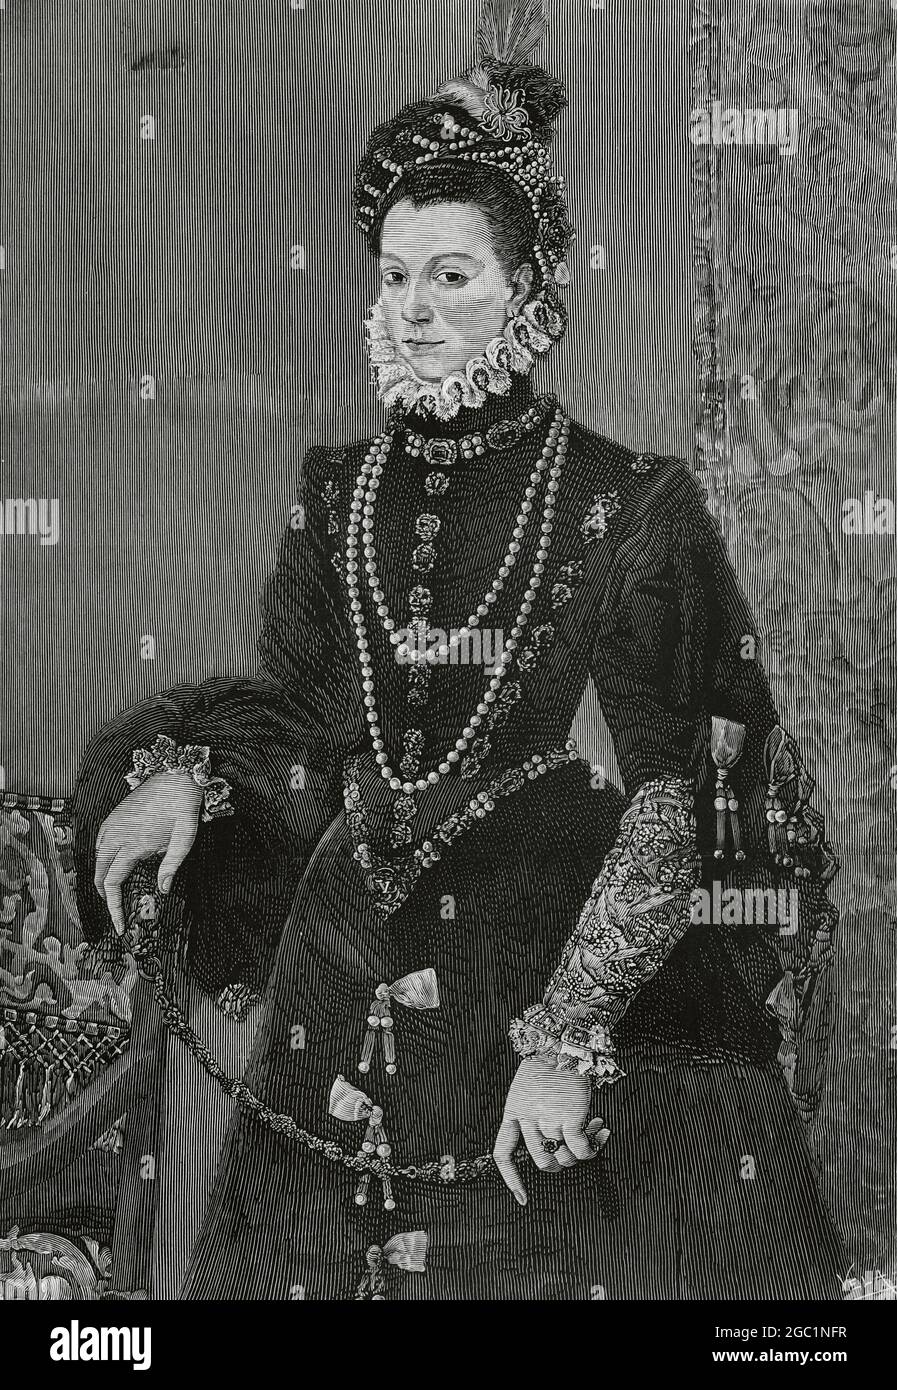 Elisabeth of Valois (1546-1568). Third wife of King Philip II of Spain and queen consort of Spain. Engraving by Vela after a painting by Juan Pantoja de la Cruz. La Ilustración Española y Americana,1882. Stock Photo